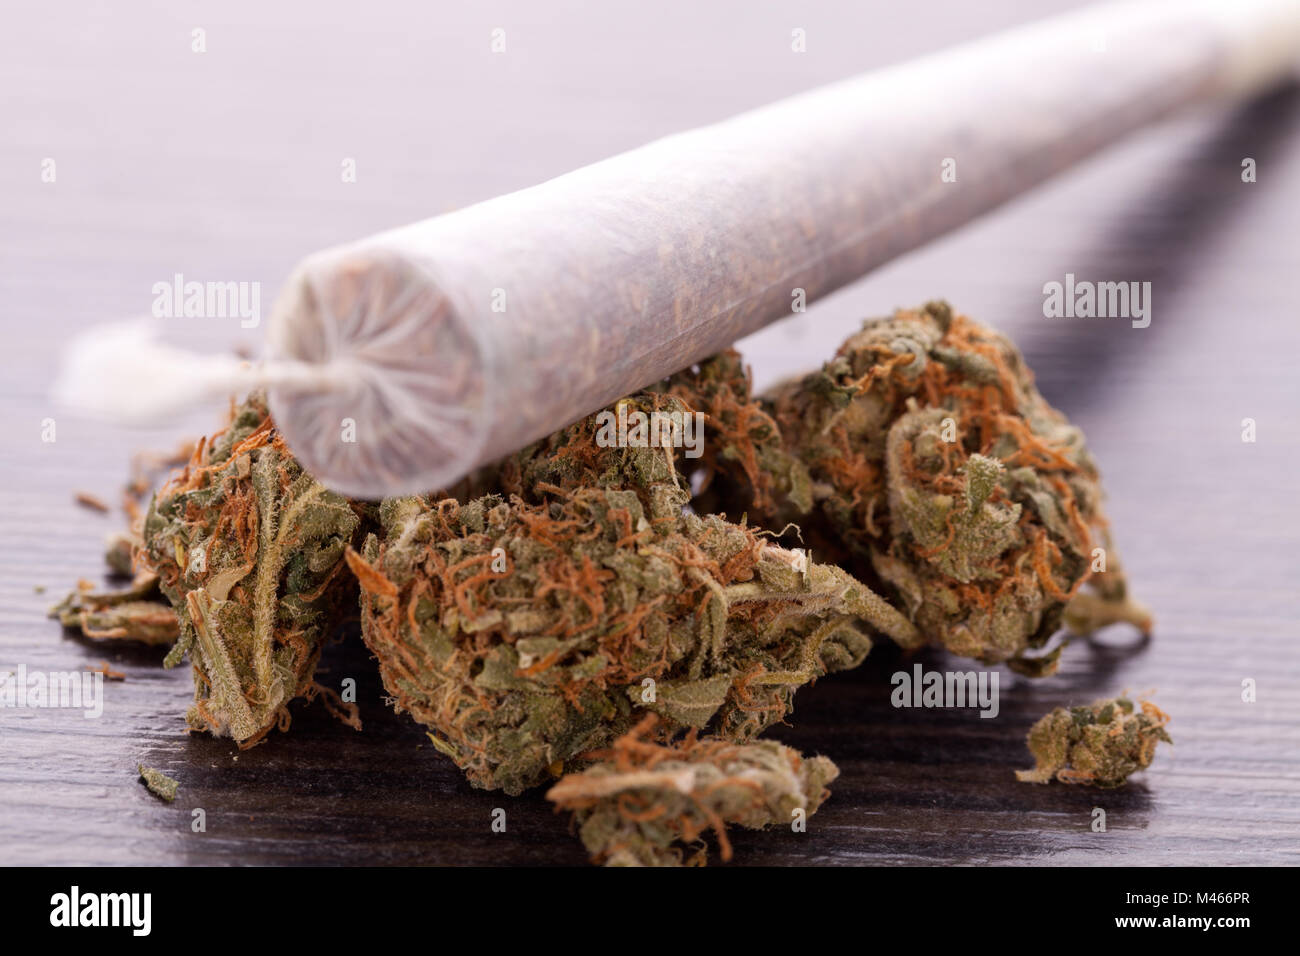 Close up de feuilles de marijuana séchée et des articulations Banque D'Images